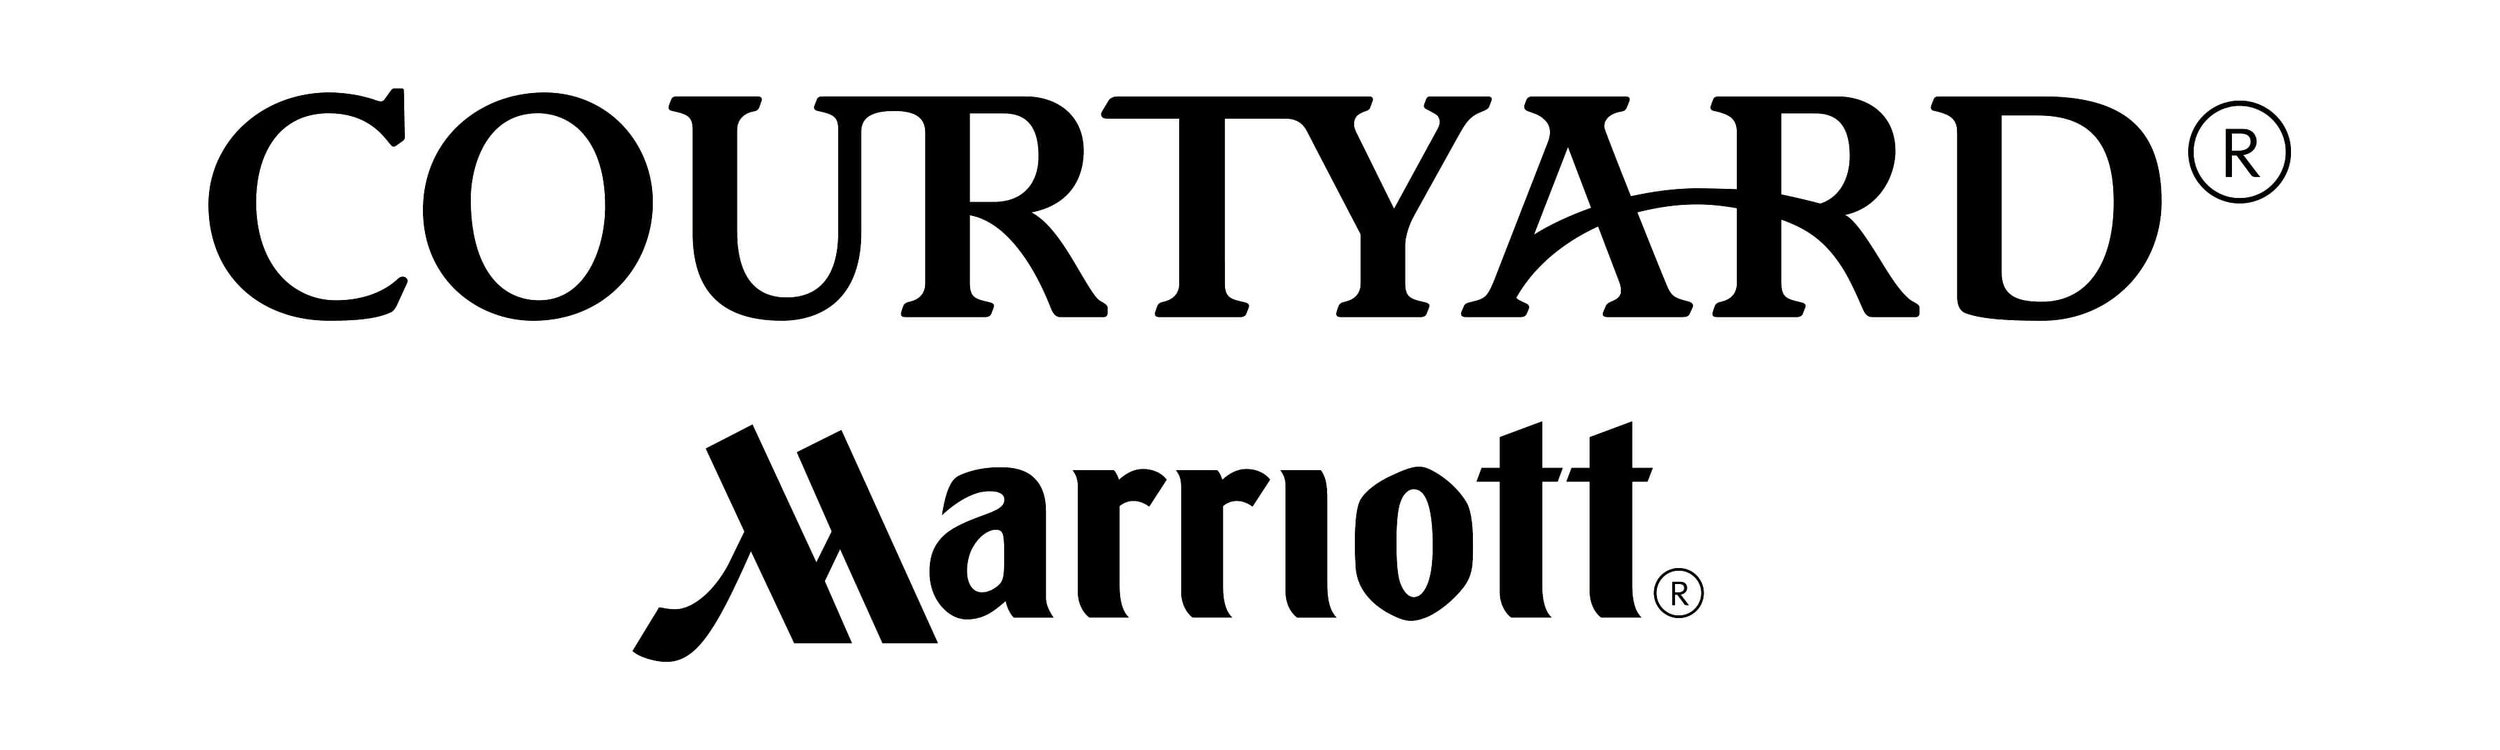 Courtyard-New-Logo.jpg